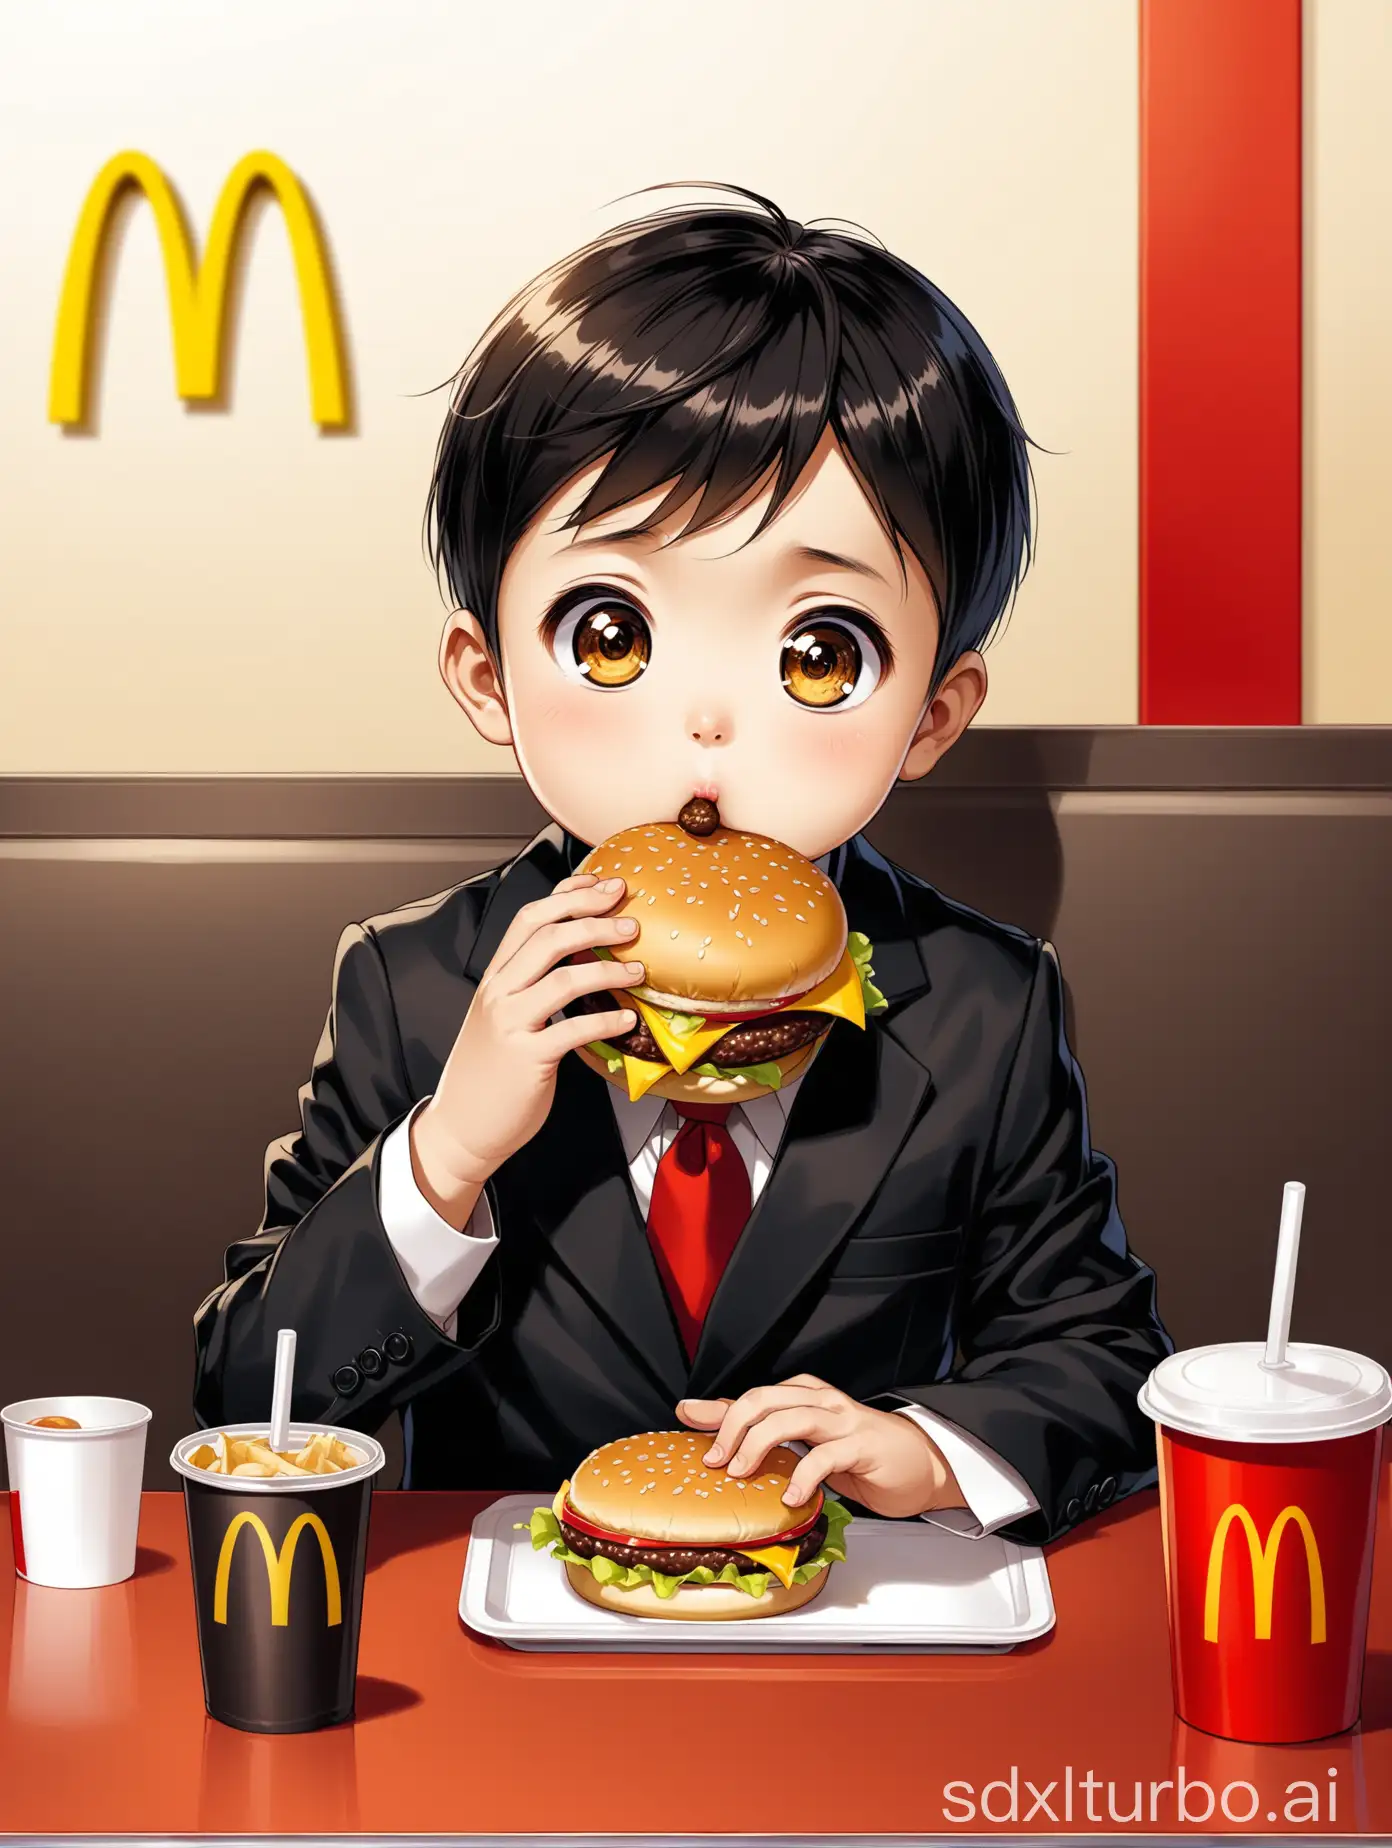 一个7岁的中国男孩，大大的眼睛，穿着一身黑套装，坐在麦当劳的餐桌，吃着汉堡